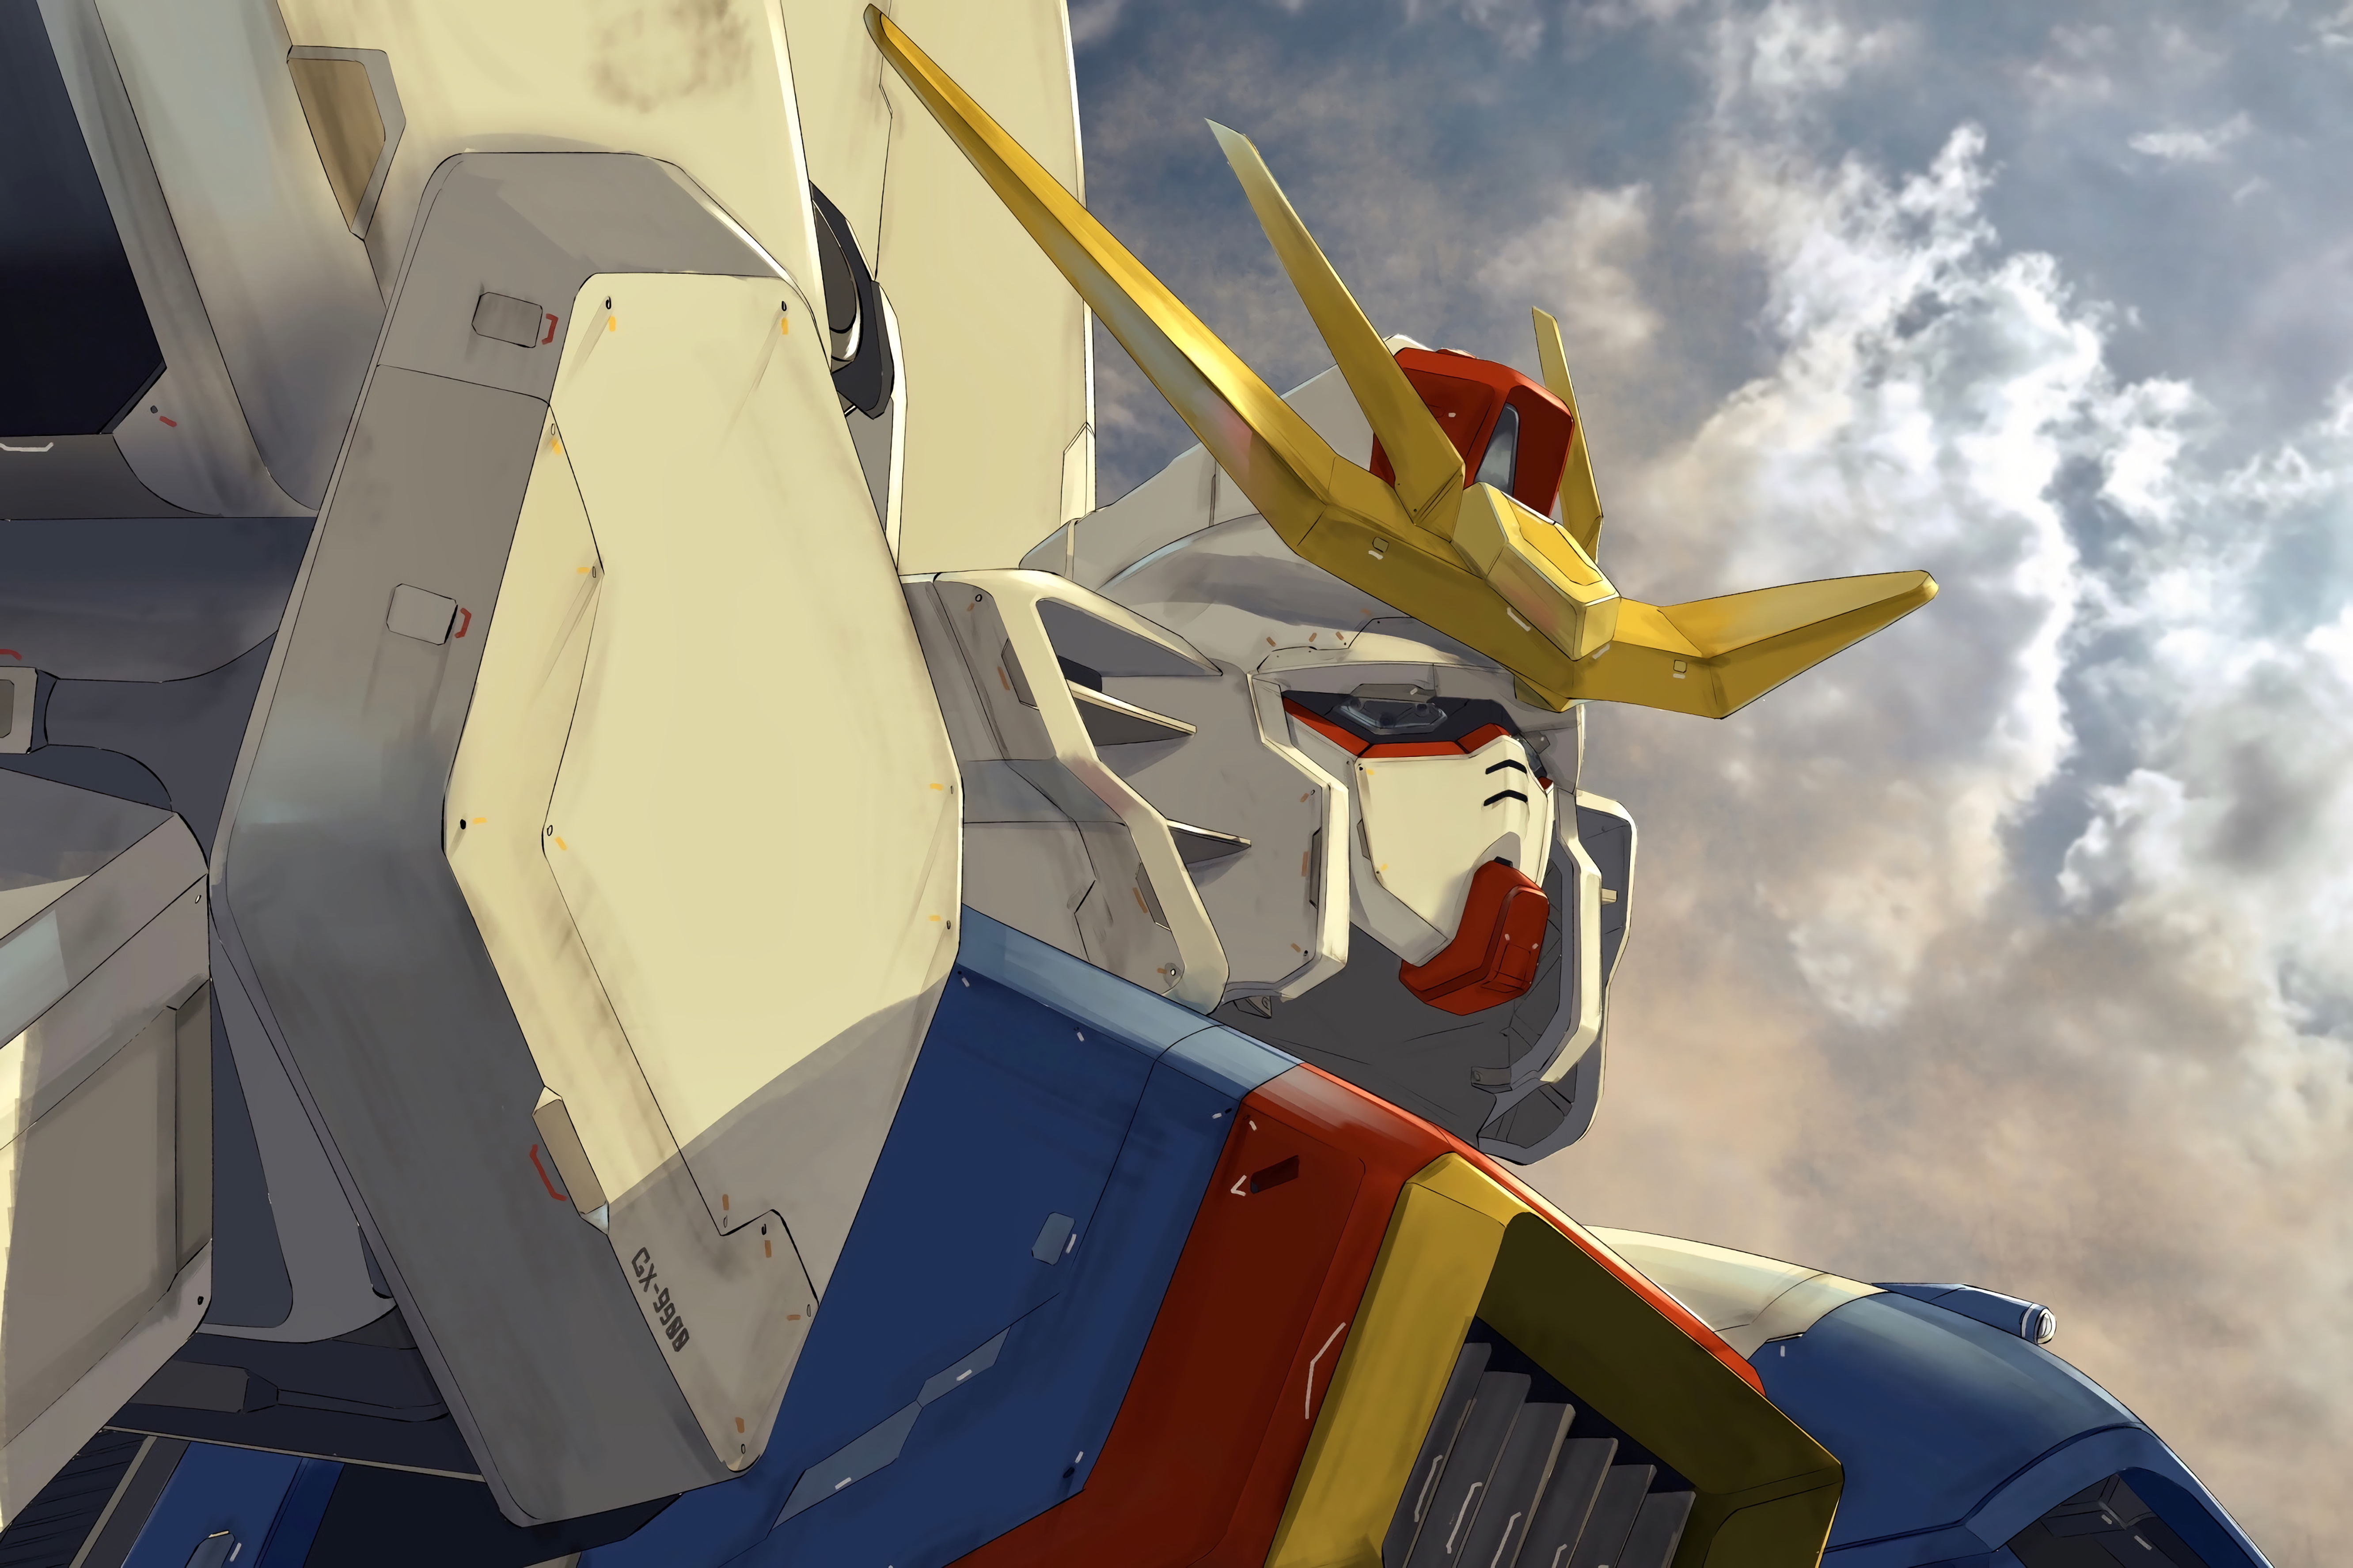 Digital Art Gundam Robot Futurism Mechs Anime 5326x3550